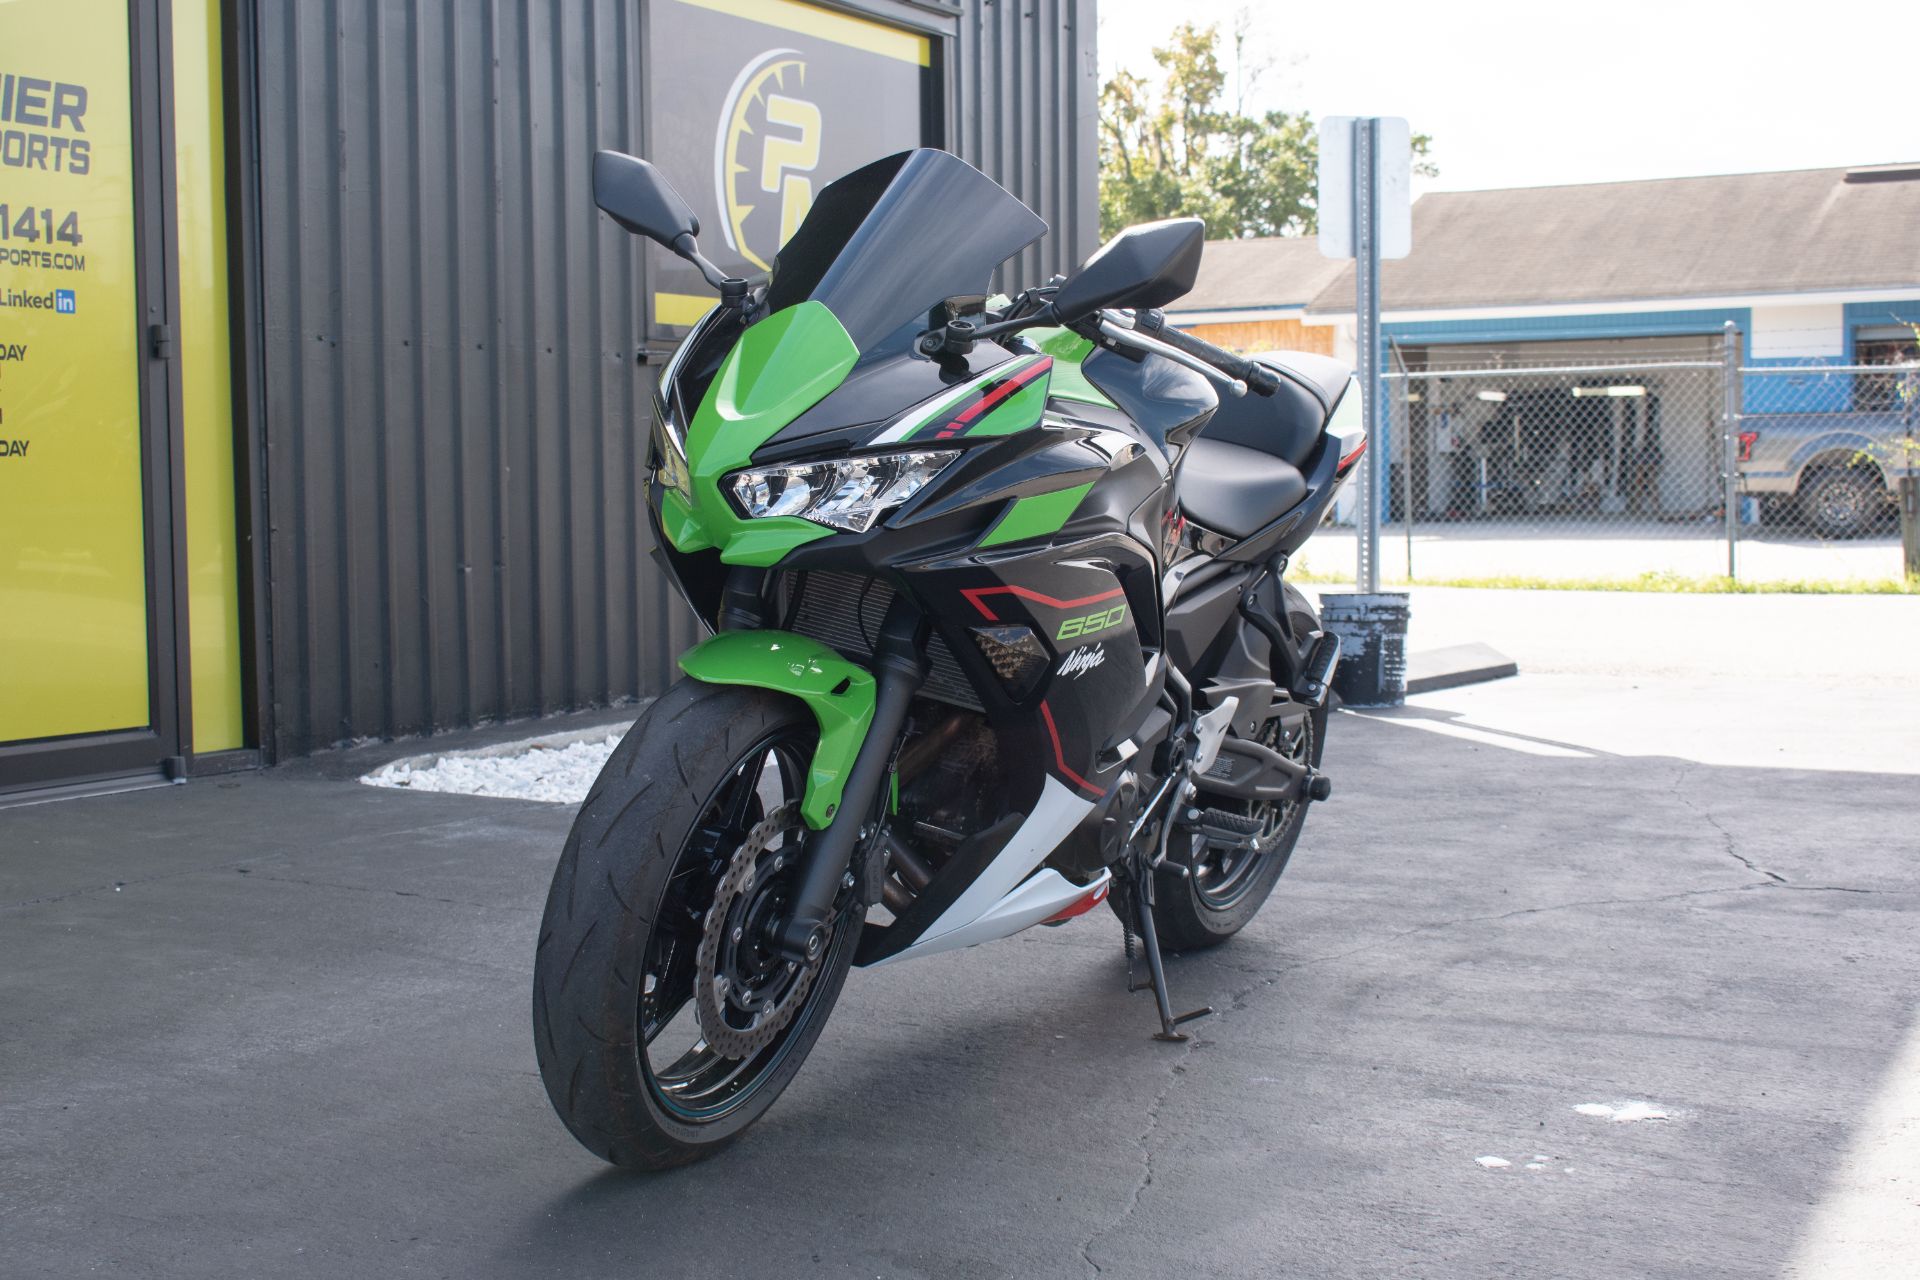 2021 Kawasaki Ninja 650 ABS in Jacksonville, Florida - Photo 14